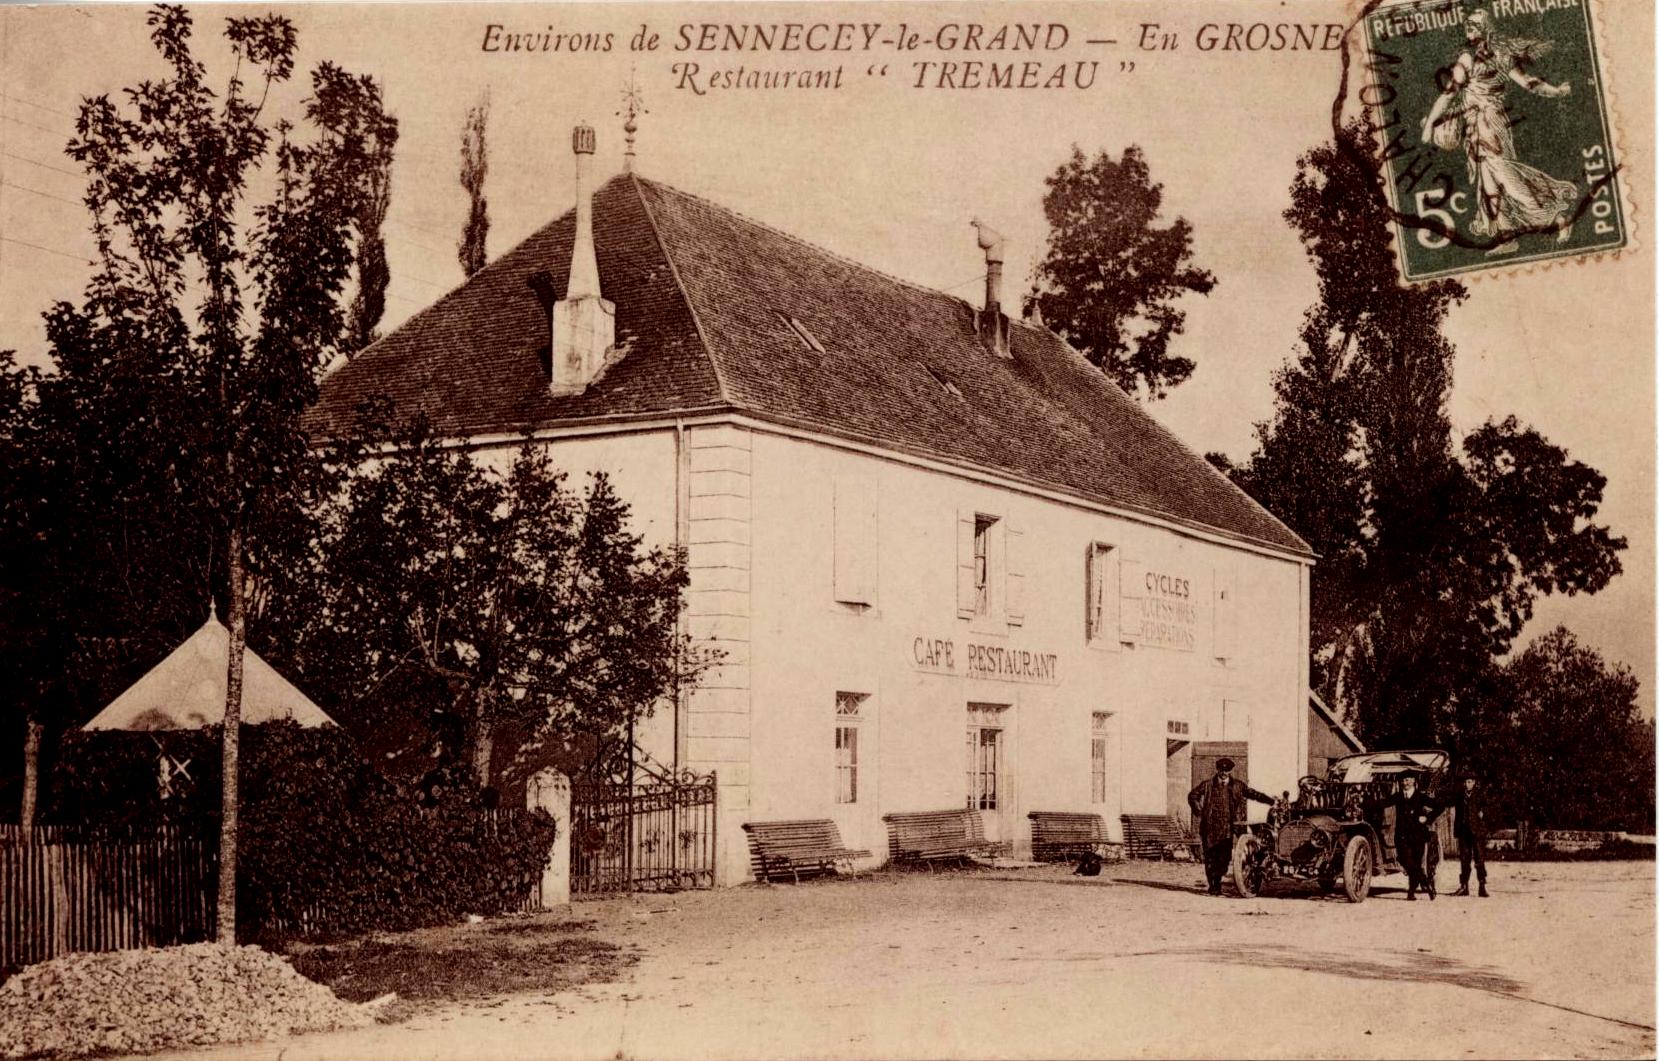 Cartes postales Saint-Cyr autrefois